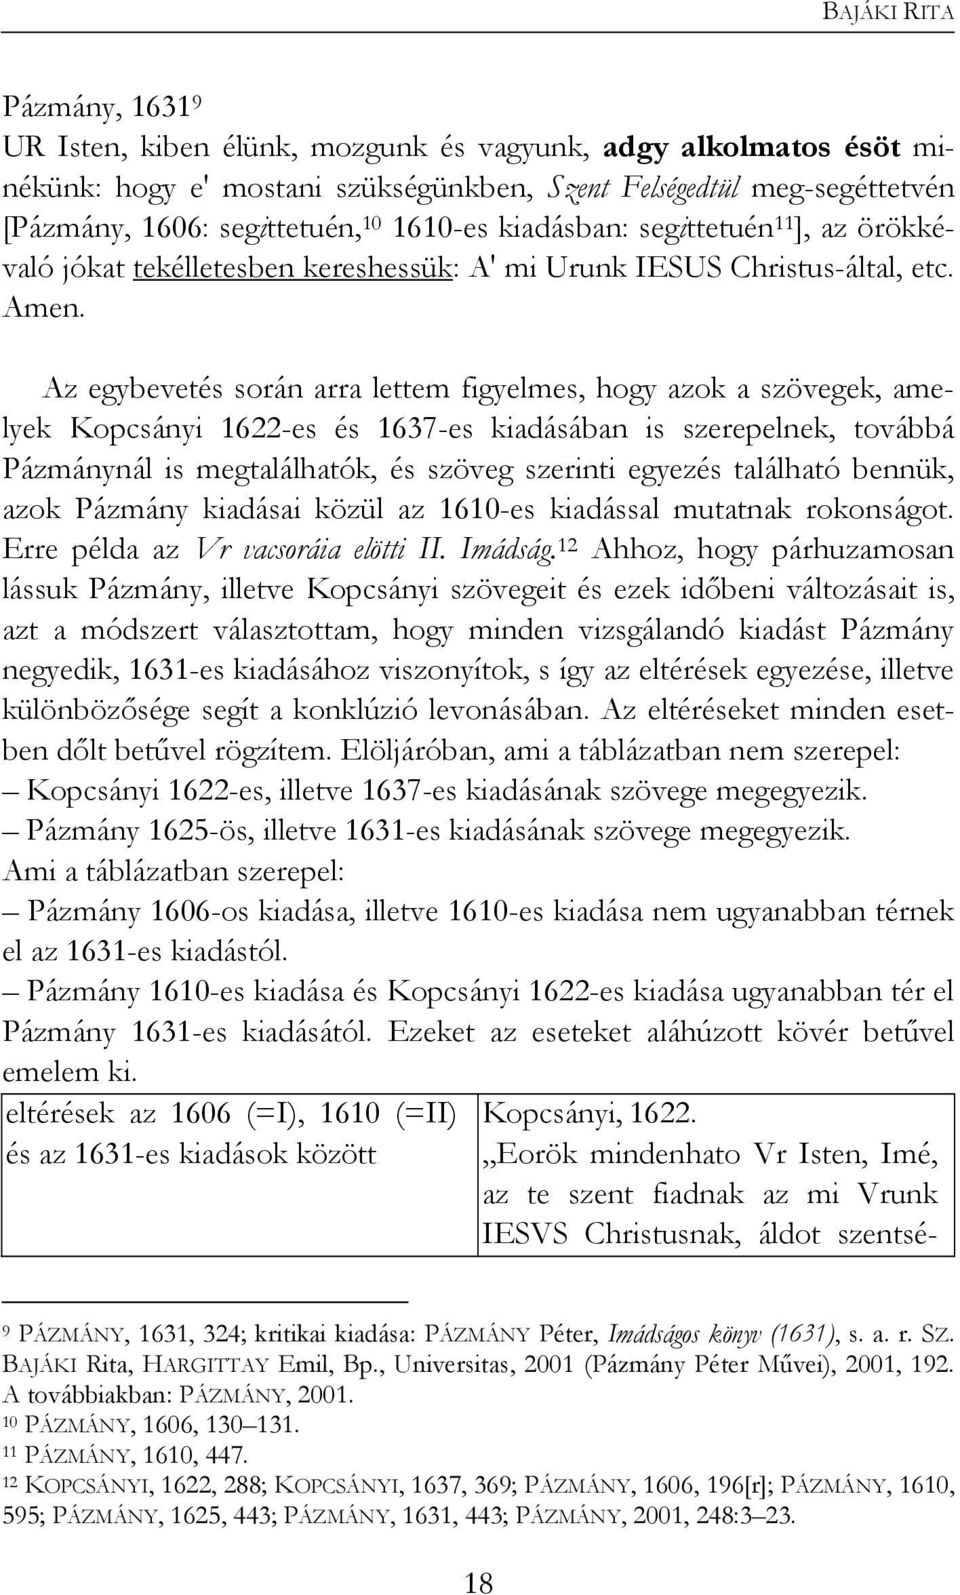 Az egybevetés során arra lettem figyelmes, hogy azok a szövegek, amelyek Kopcsányi 1622-es és 1637-es kiadásában is szerepelnek, továbbá Pázmánynál is megtalálhatók, és szöveg szerinti egyezés